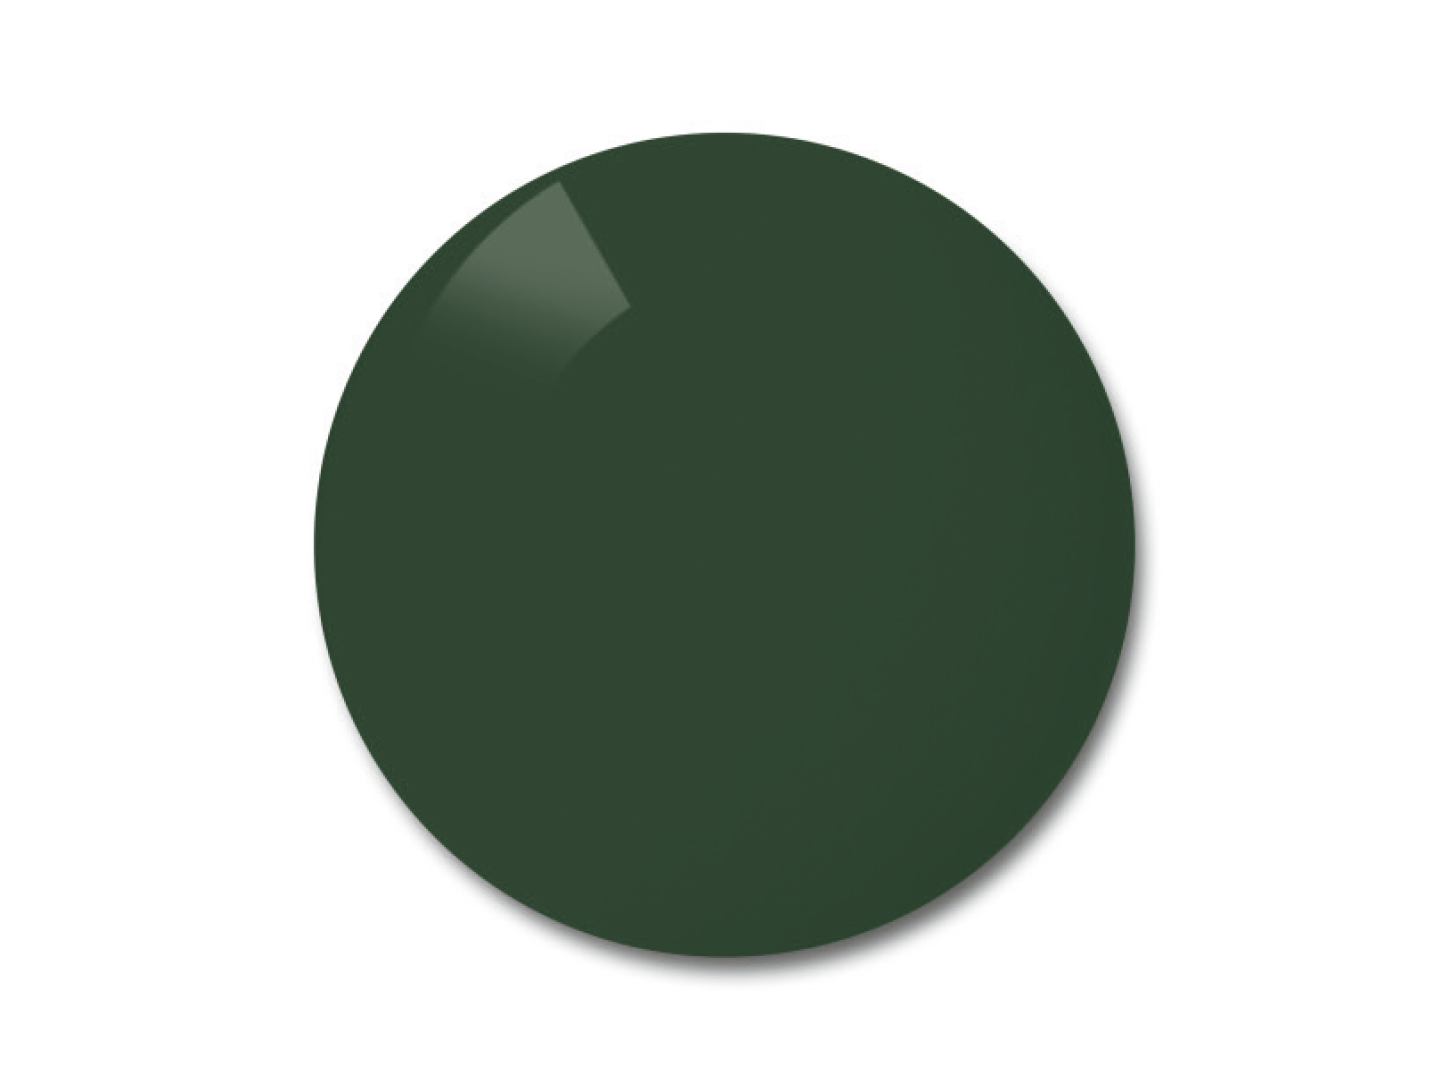 Afbeelding van ZEISS Polarised brillenglazen in de kleuroptie pioneer (grijs-groen) 